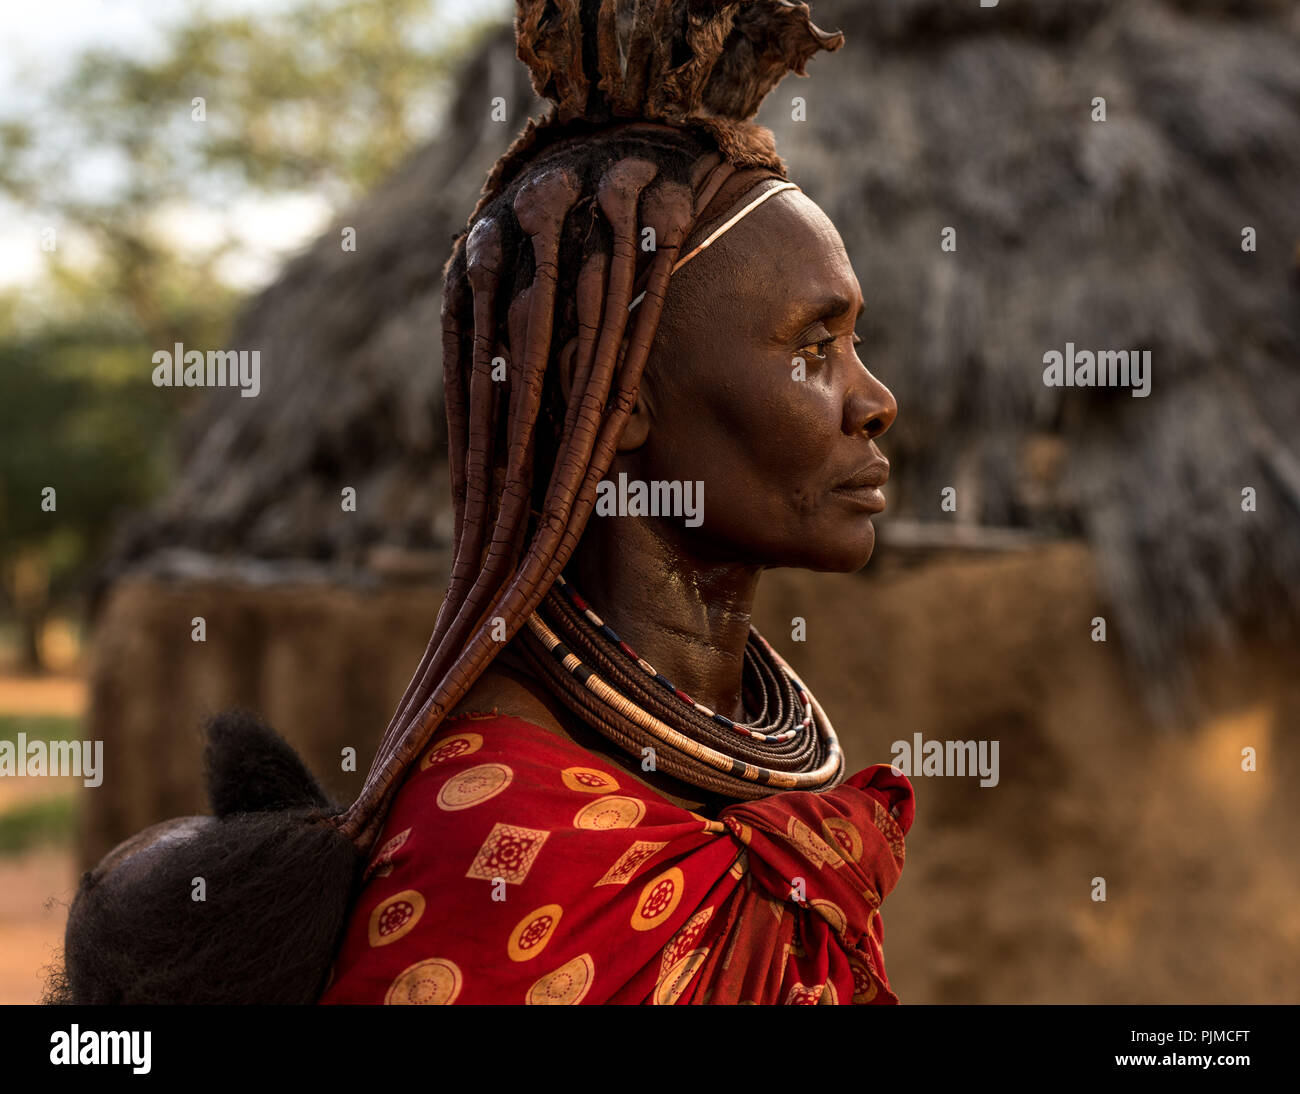 Ritratto di una donna Himba nell'ultima luce del sole, profilo laterale. Il bambino sulla schiena è solo visibile Foto Stock